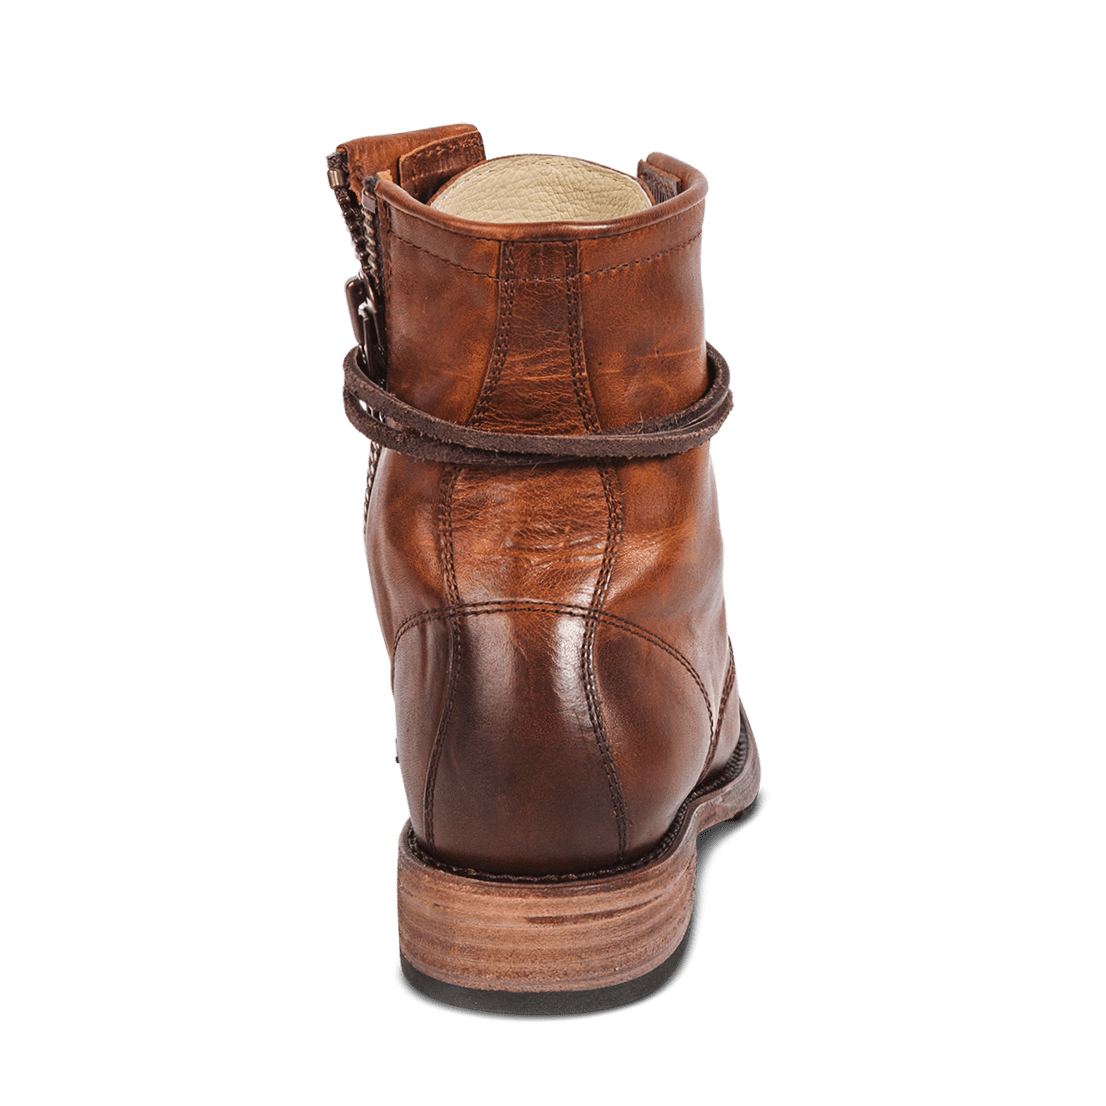 Back view showing low wood heel on FREBIRD women's Manchester cognac combat boot